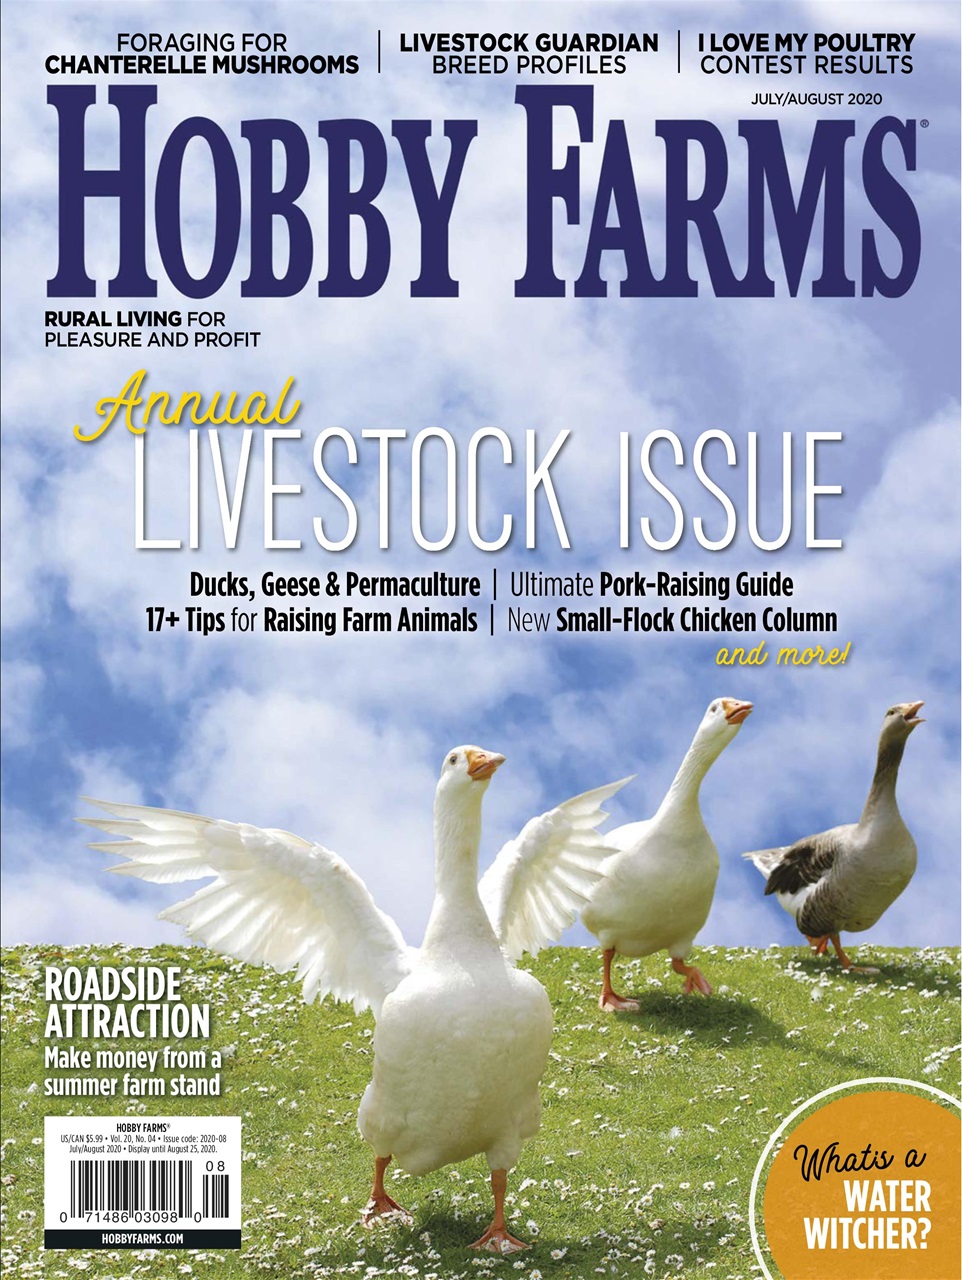 hobby farm deductions